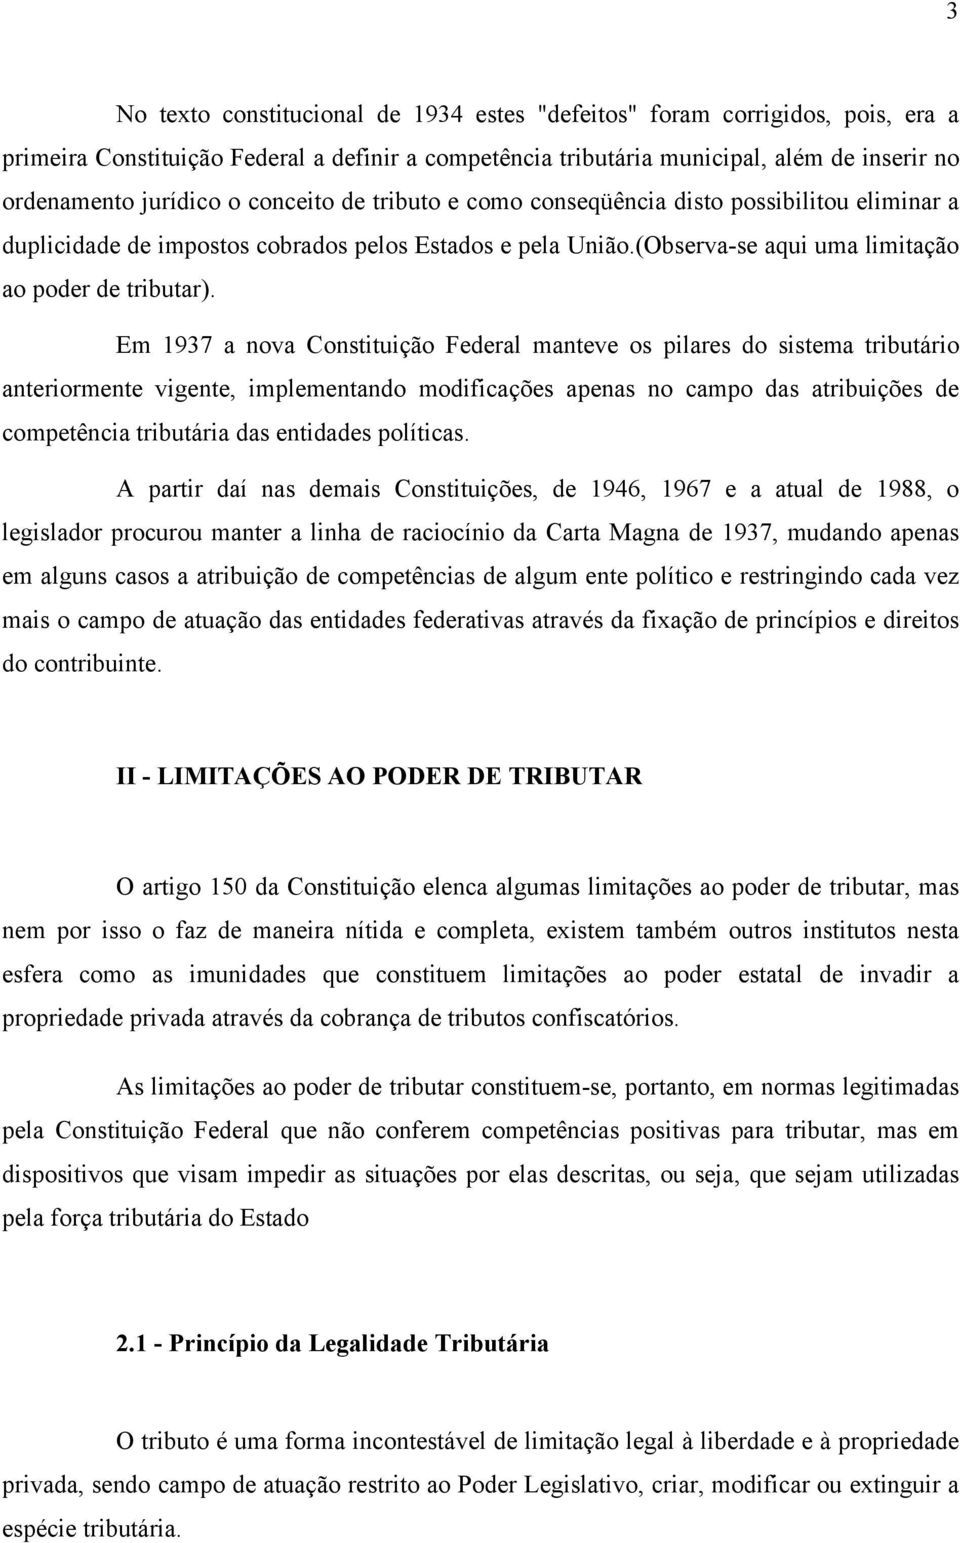 Em 1937 a nova Constituição Federal manteve os pilares do sistema tributário anteriormente vigente, implementando modificações apenas no campo das atribuições de competência tributária das entidades